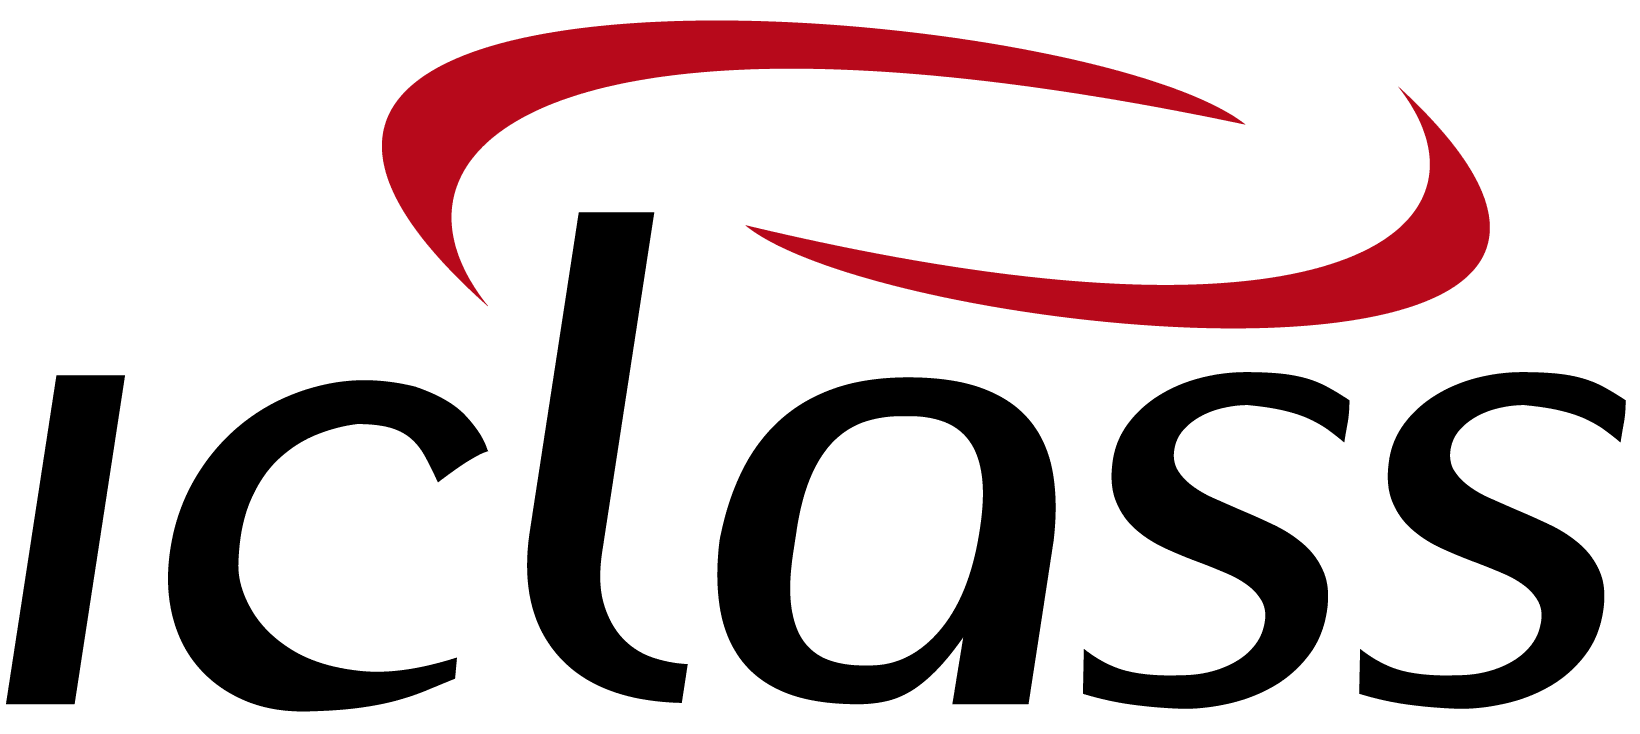 logo IClass Software de Ordem de Serviço Online Software para o Segmento de Construção e Empreiteiras | IClass